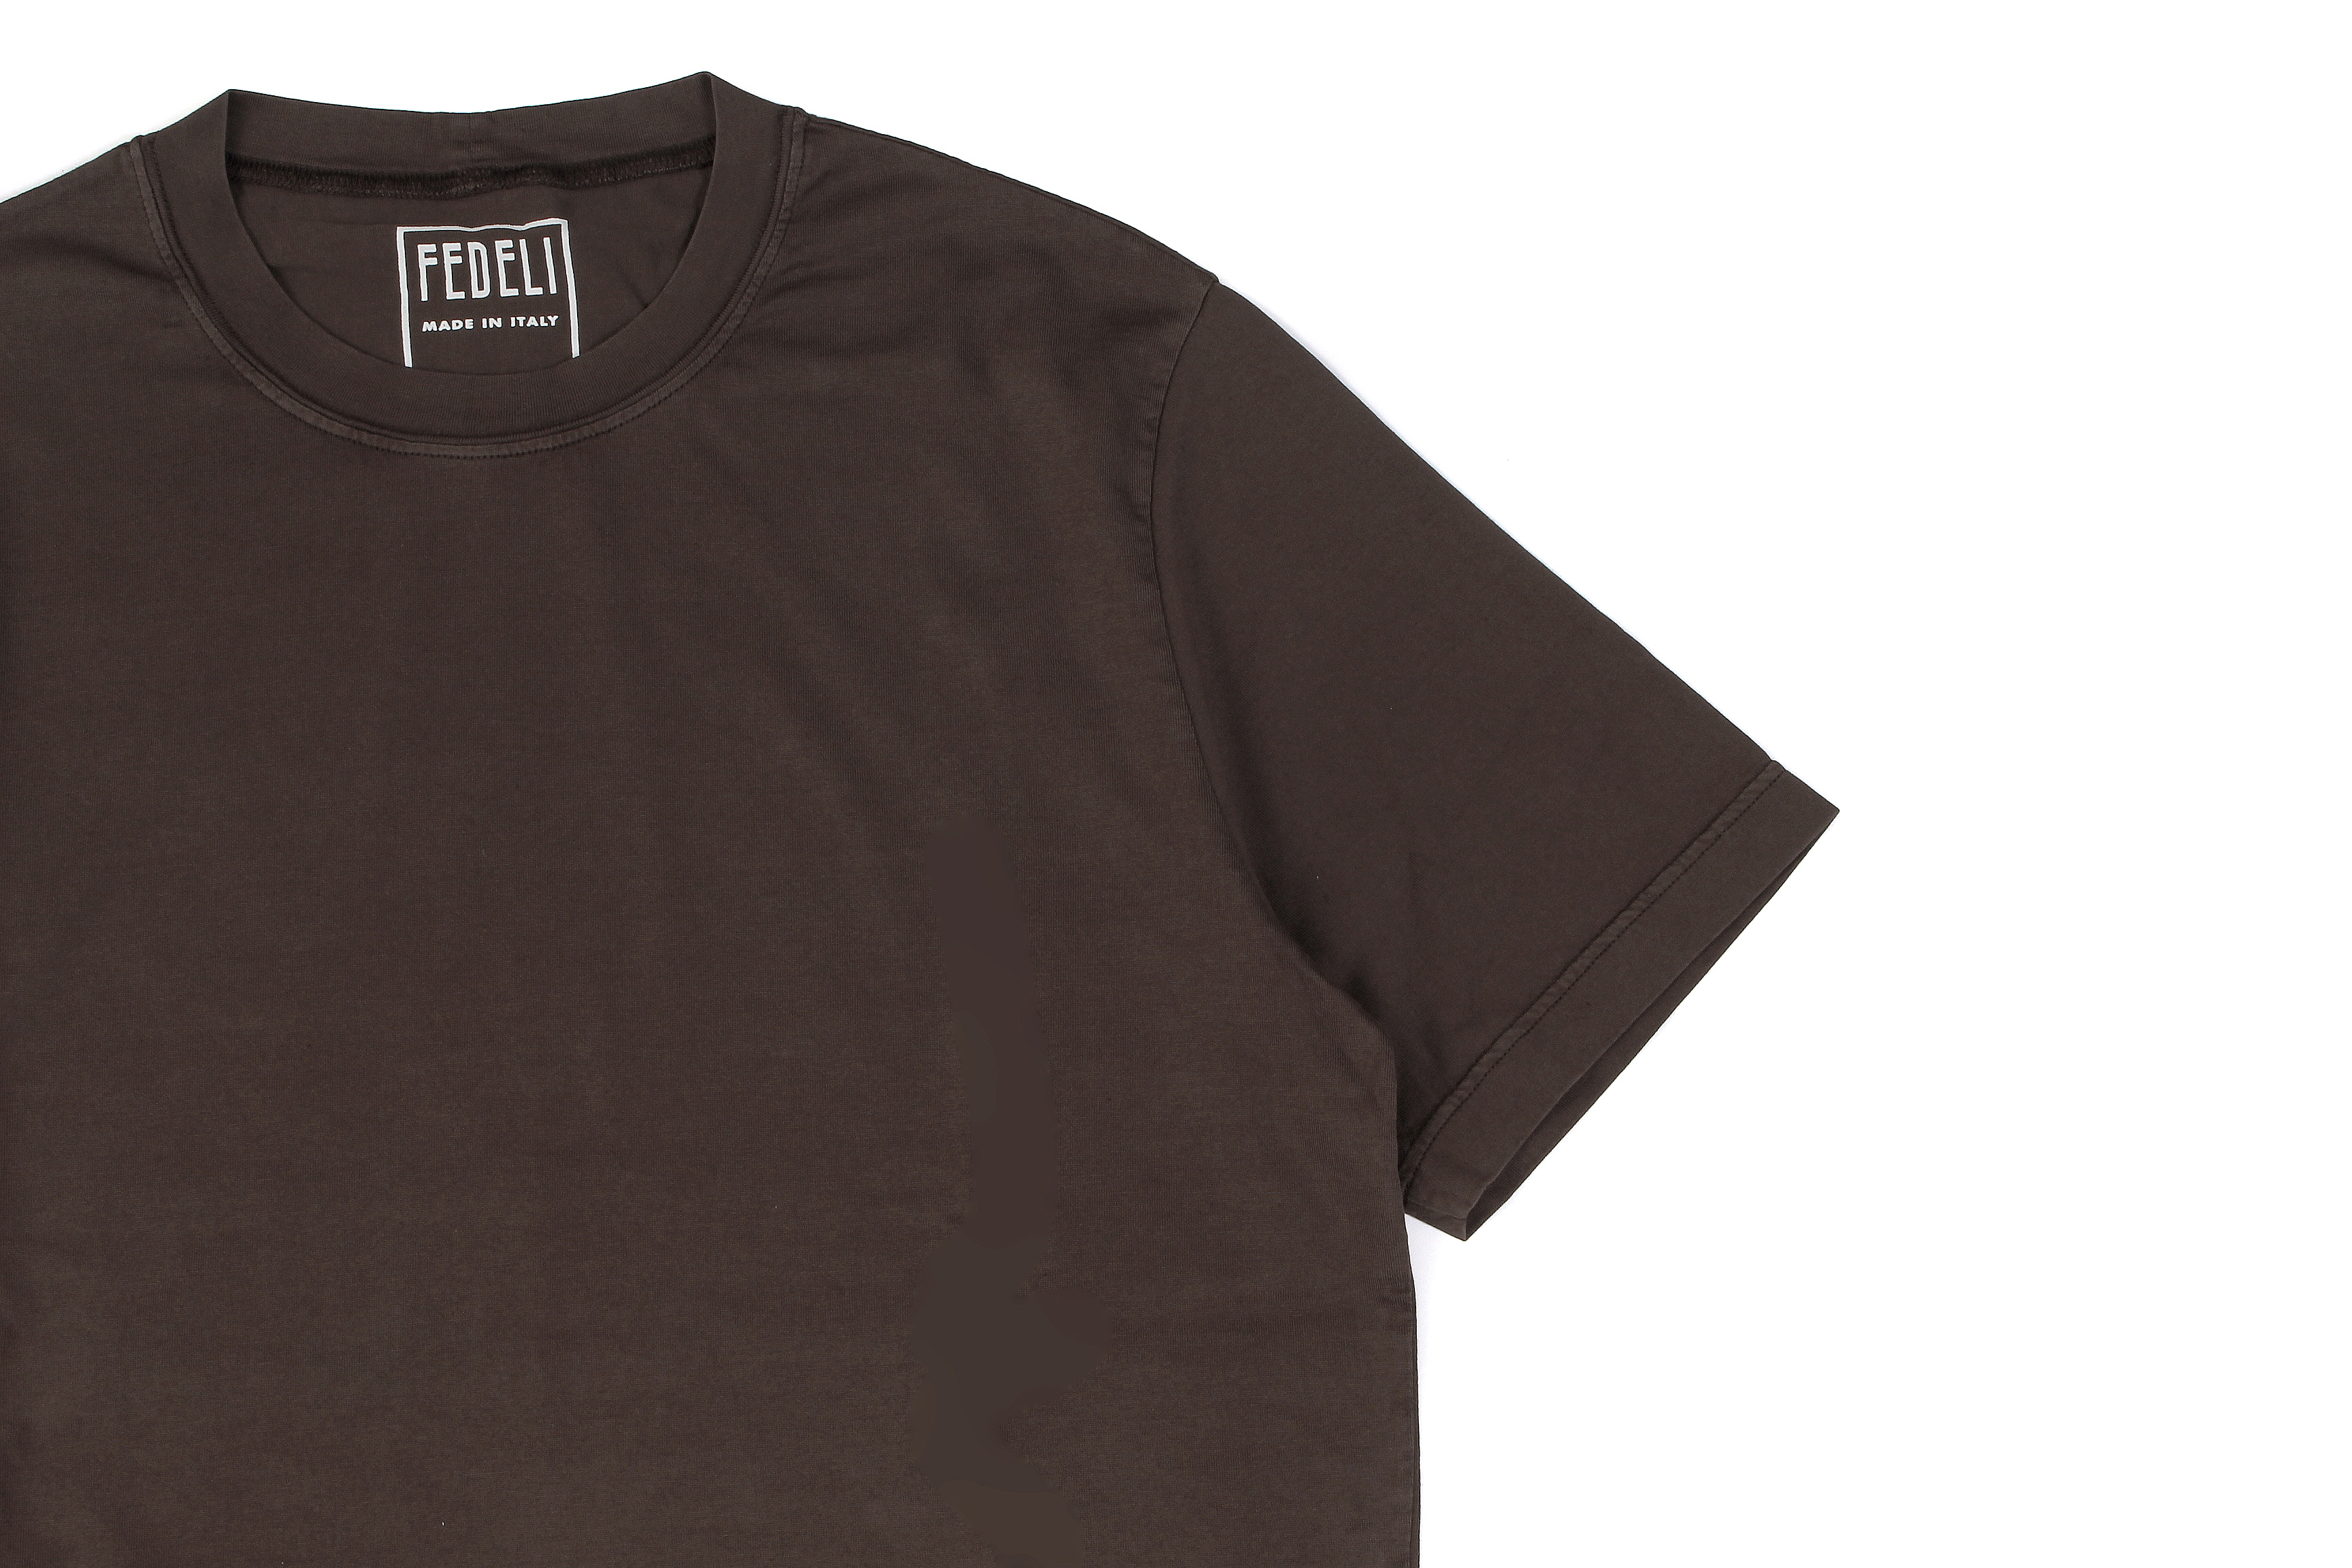 FEDELI(フェデーリ) Crew Neck T-shirt (クルーネック Tシャツ) ギザコットン Tシャツ BROWN (ブラウン